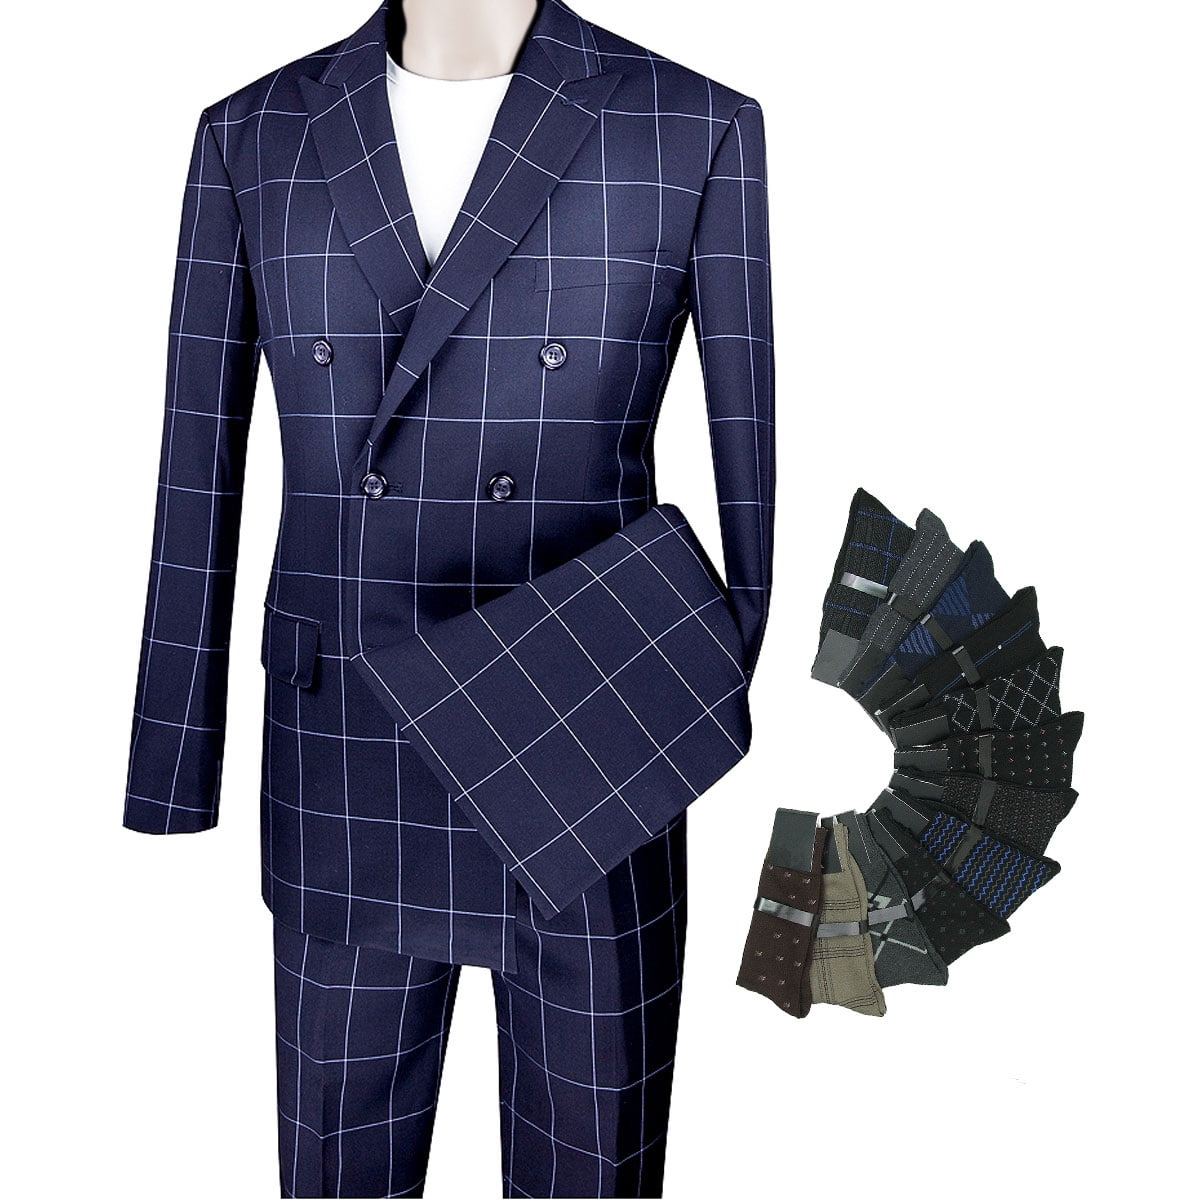 Acquaviva - Classic Blue Suit - Single-breasted | Classic blue suit, Blue  suit, Business casual attire for men